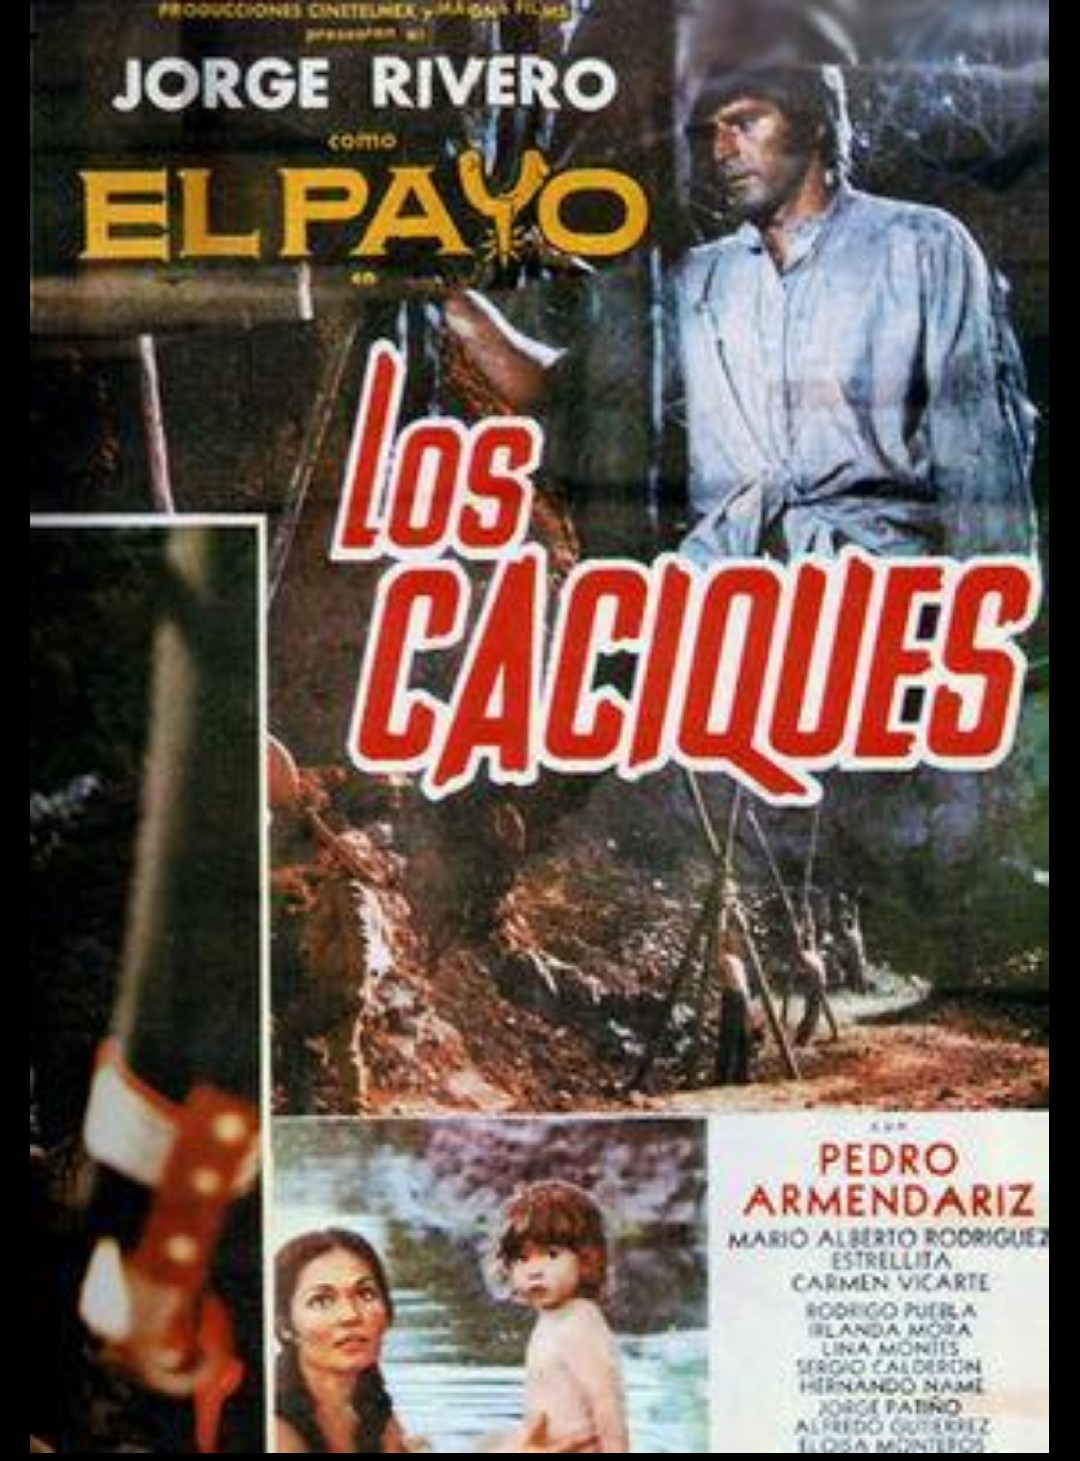 Los caciques (1975) Screenshot 1